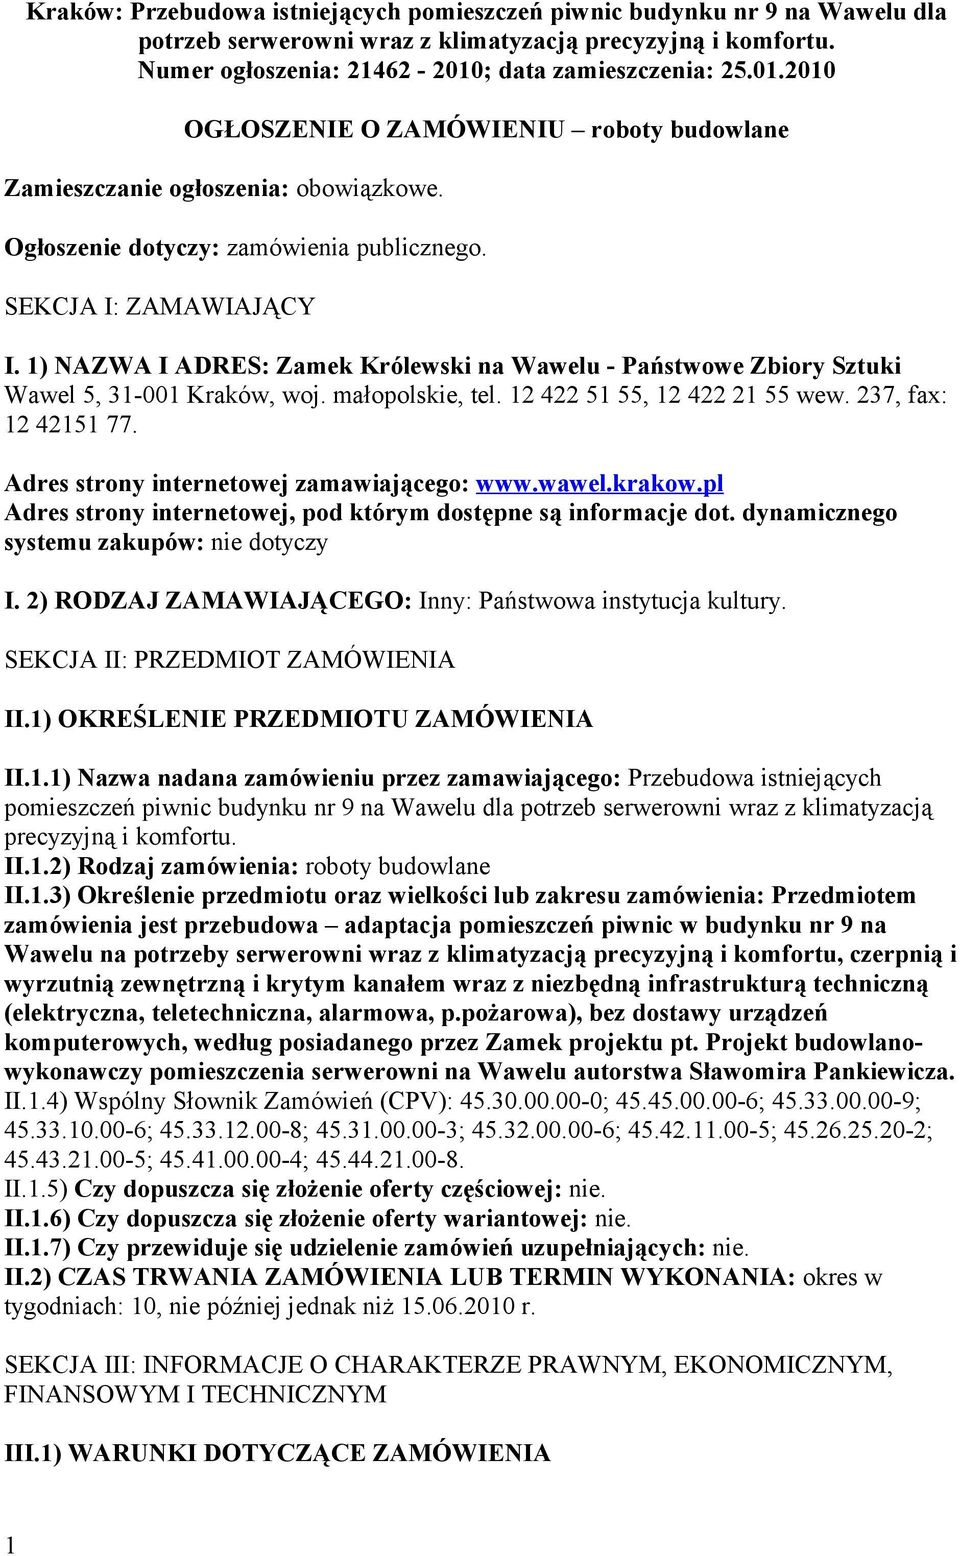 1) NAZWA I ADRES: Zamek Królewski na Wawelu - Państwowe Zbiory Sztuki Wawel 5, 31-001 Kraków, woj. małopolskie, tel. 12 422 51 55, 12 422 21 55 wew. 237, fax: 12 42151 77.